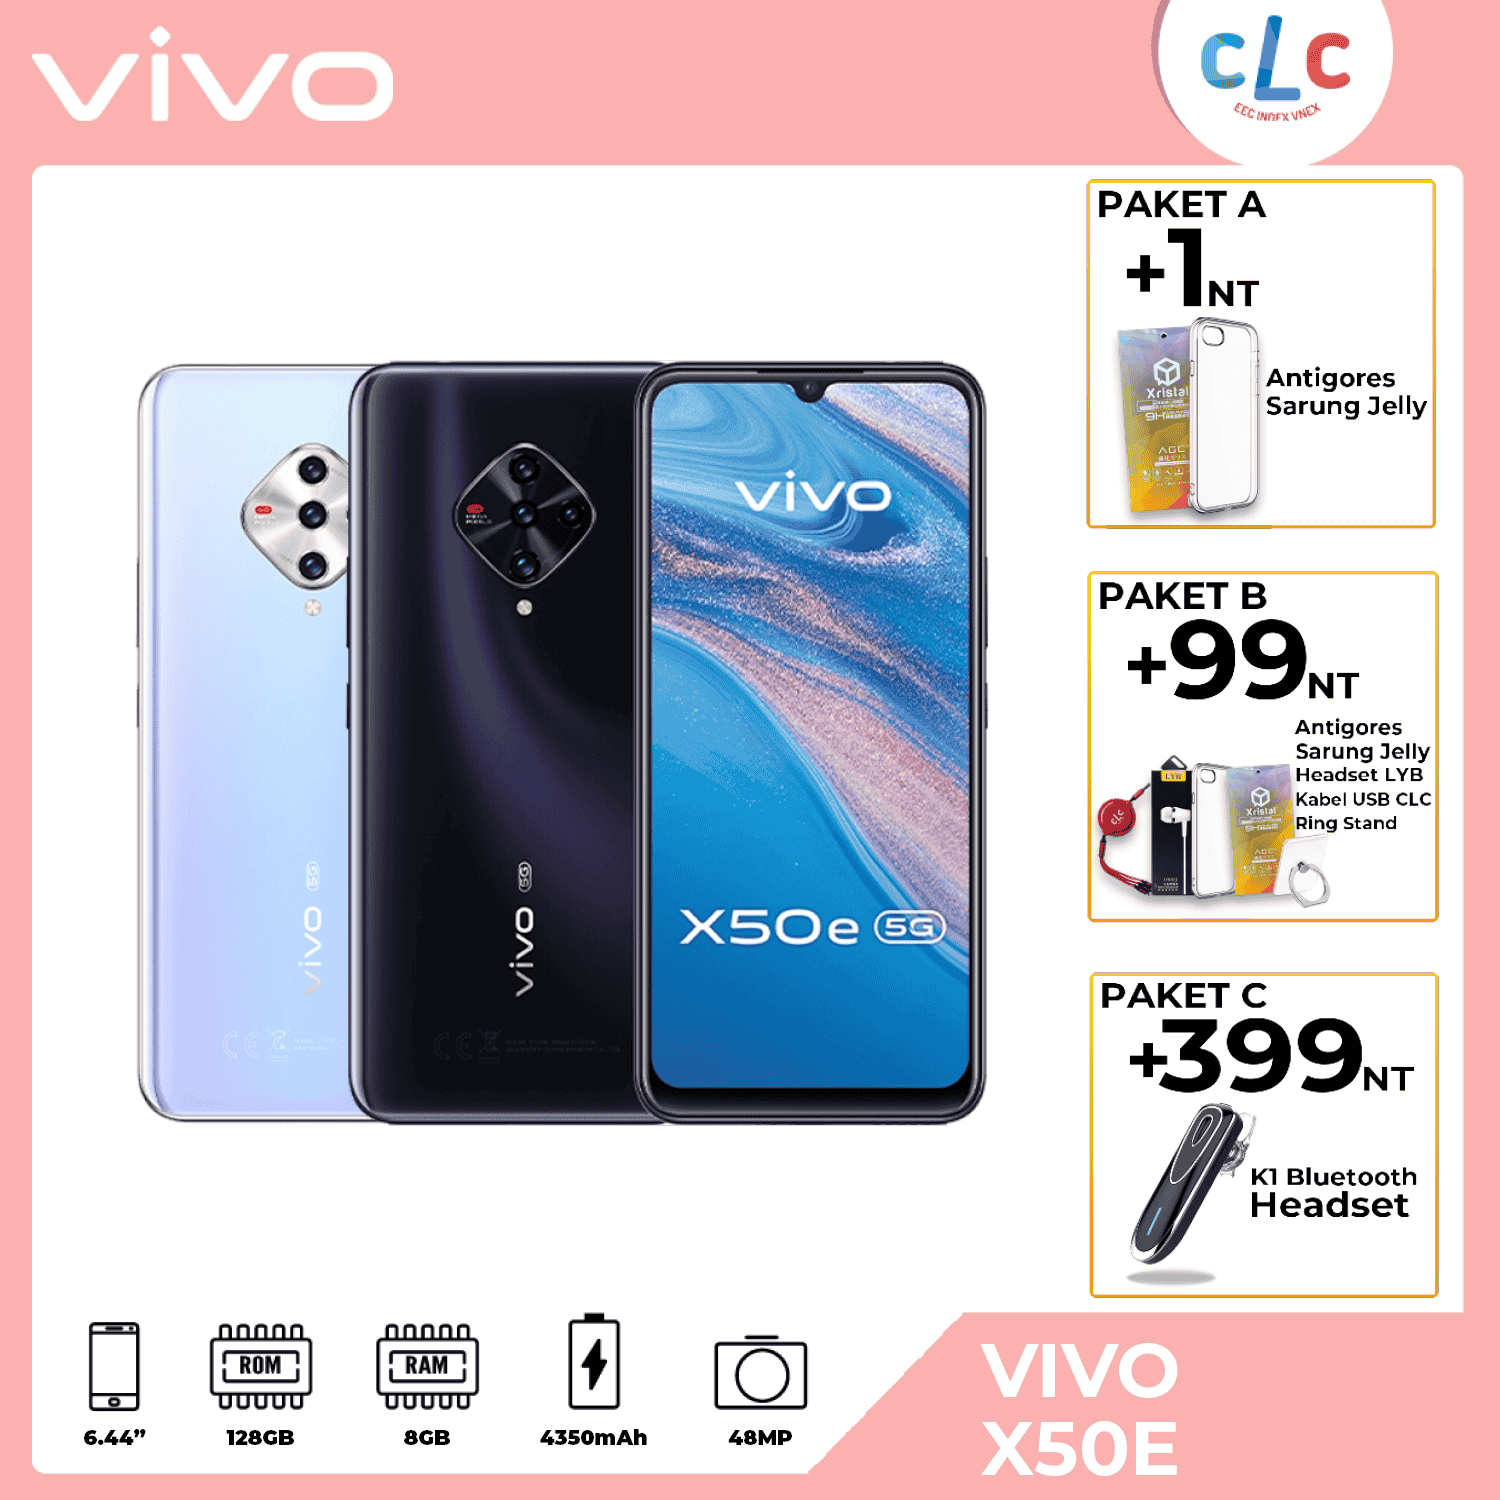 VIVO X50E (5G)